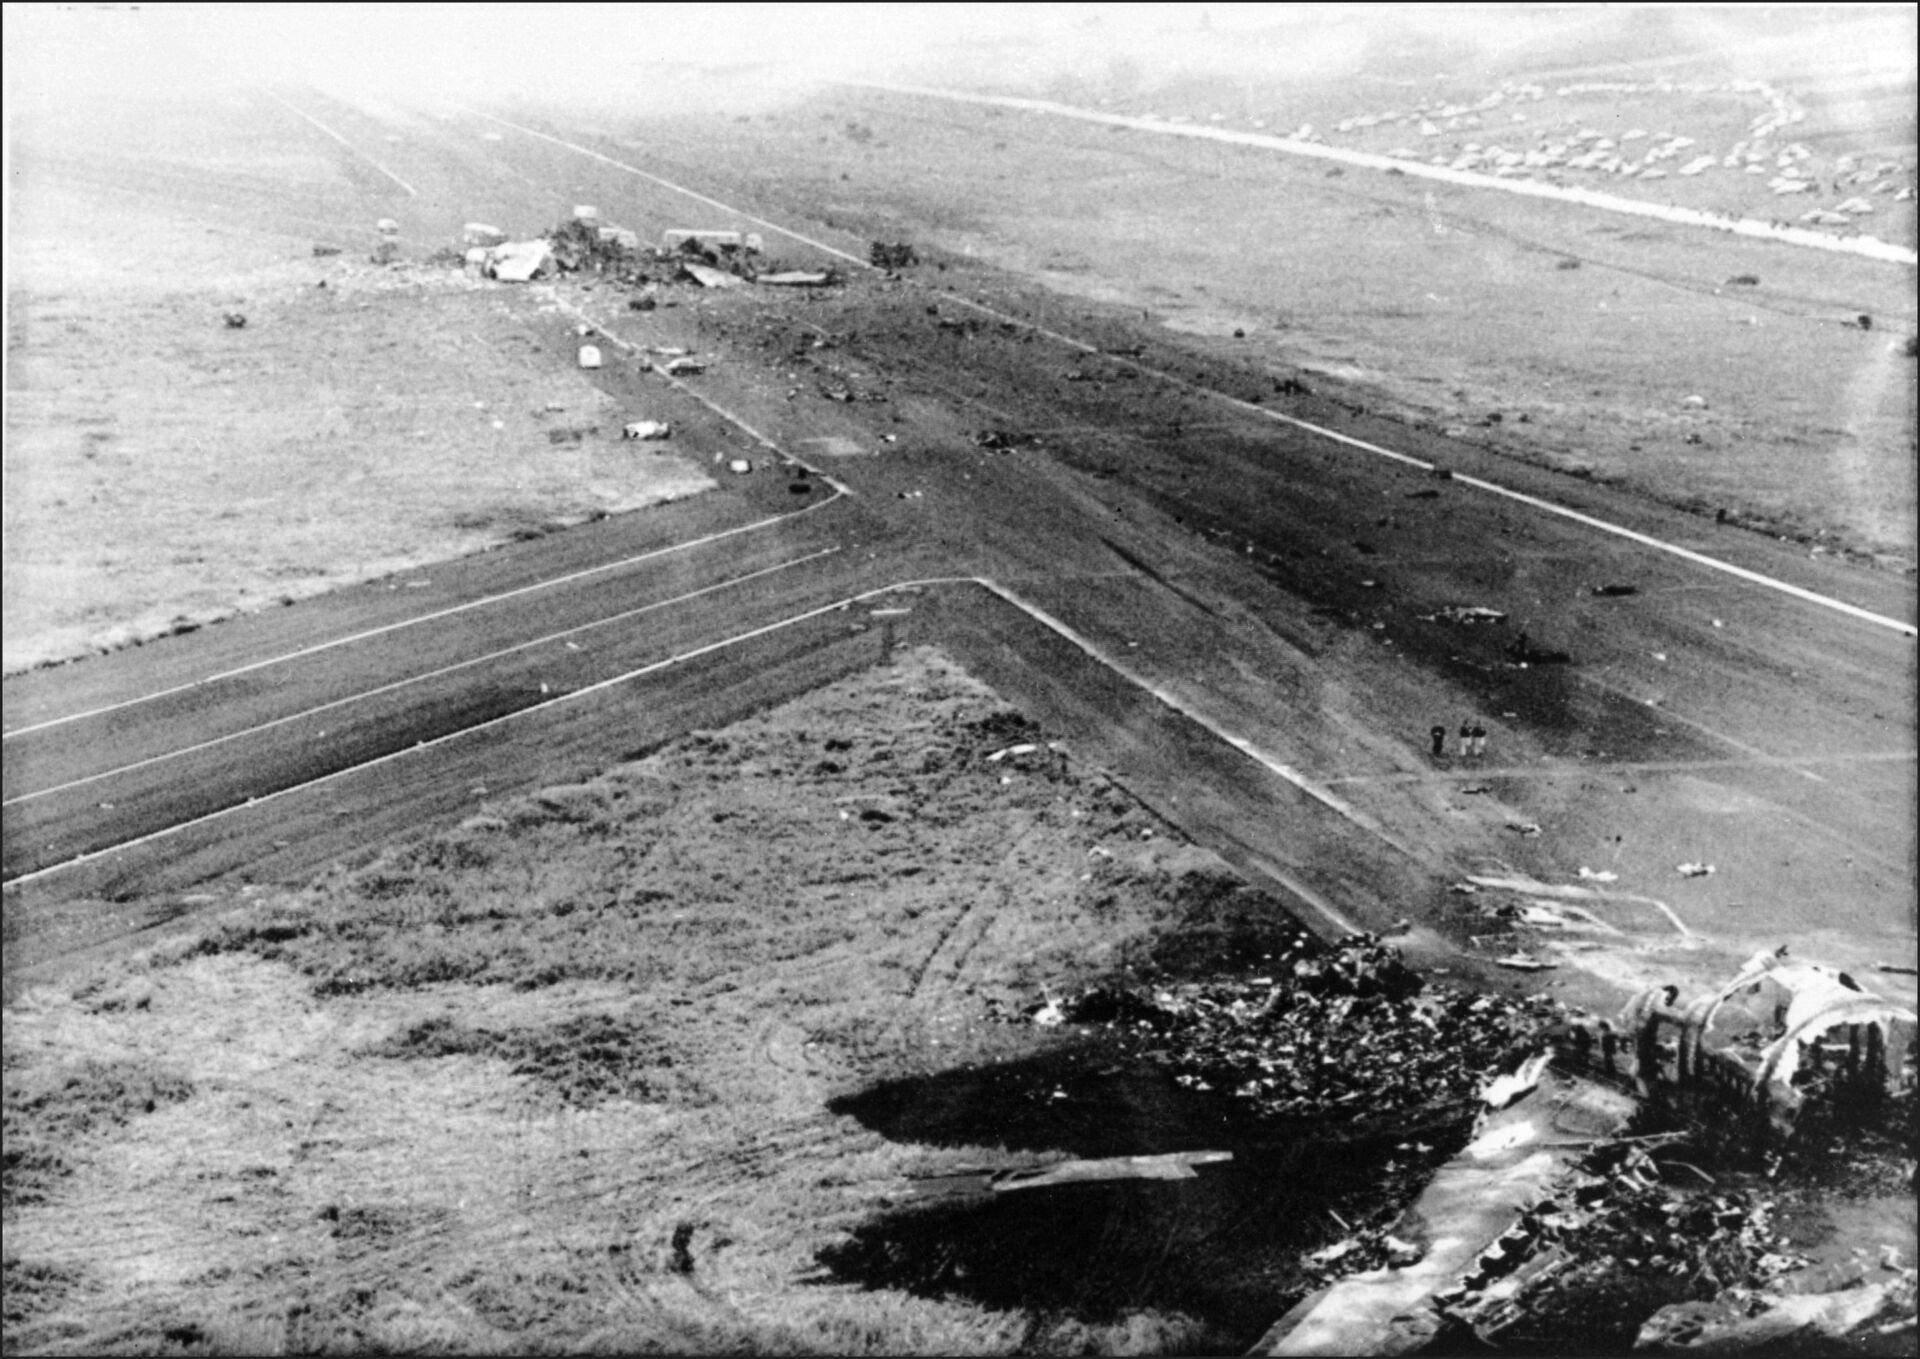 583 mennesker mistede livet, da to fly kolliderede i lufthavnen på Tenerife i 1977. Det er den værste flykollision i verdenshistorien.&nbsp;
